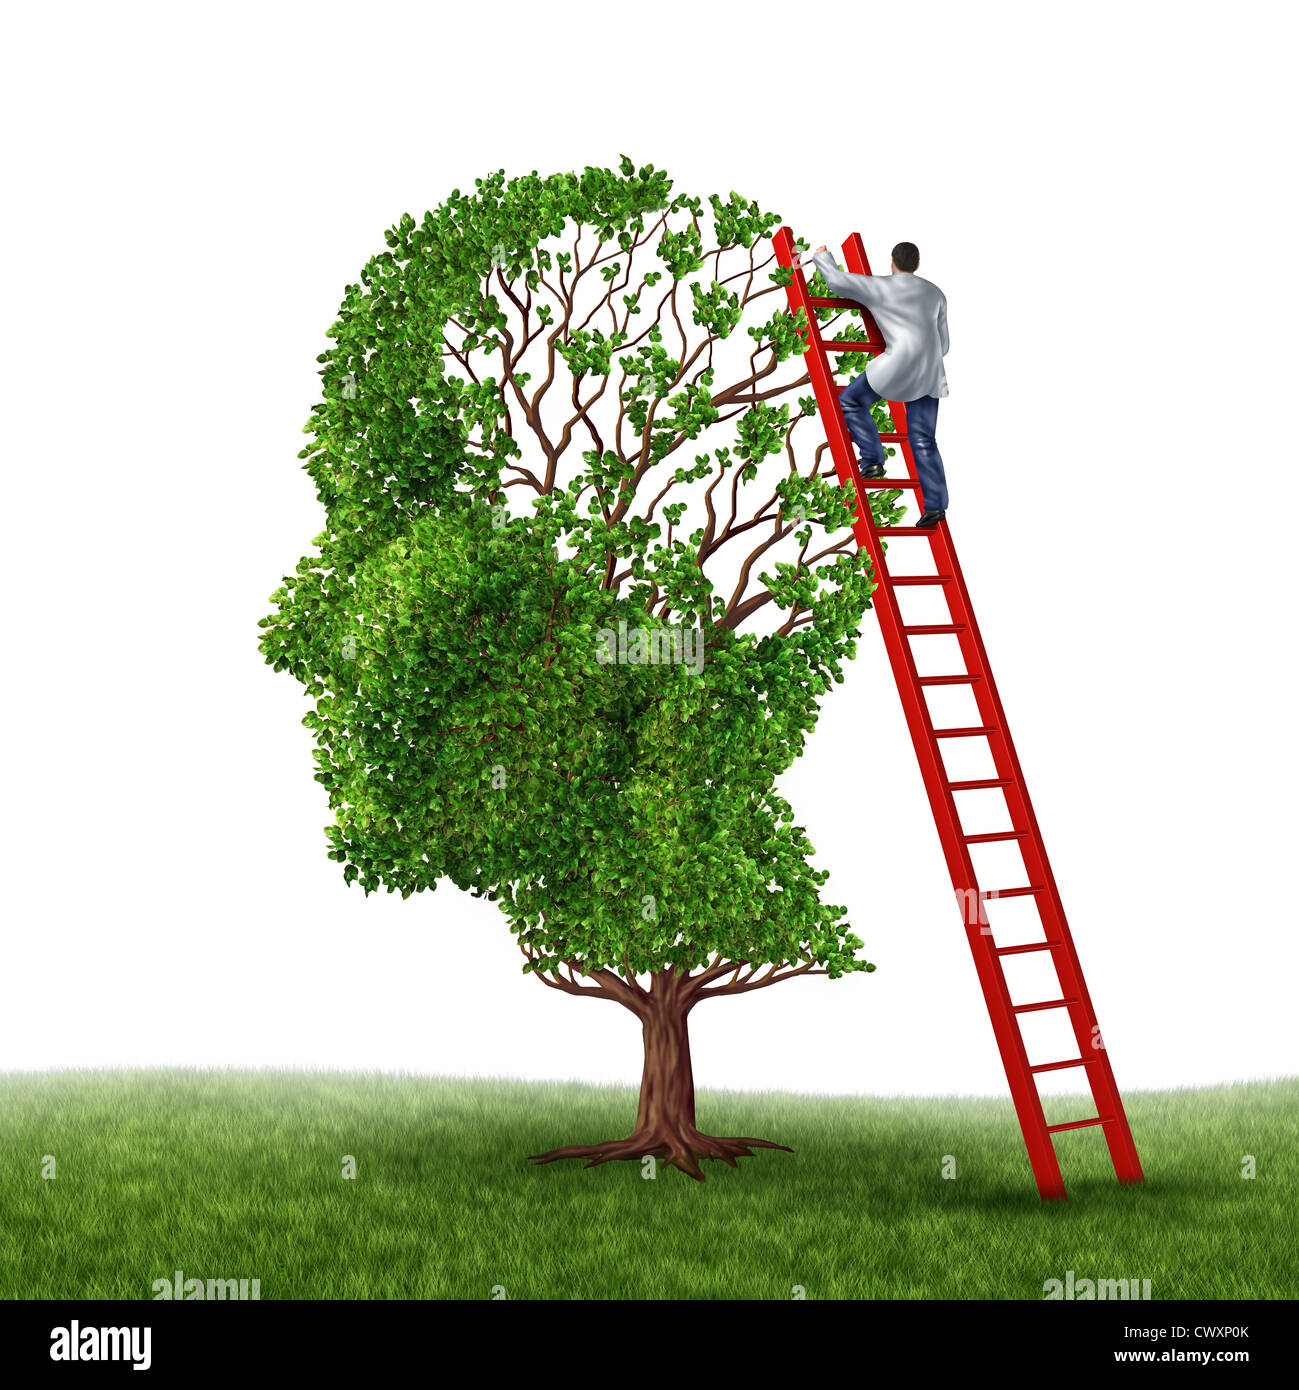 Cervello e memoria esame medico con un medico su una scala rossa salire in alto per ispezionare una testa umana struttura sagomata come un simbolo di dem Foto Stock